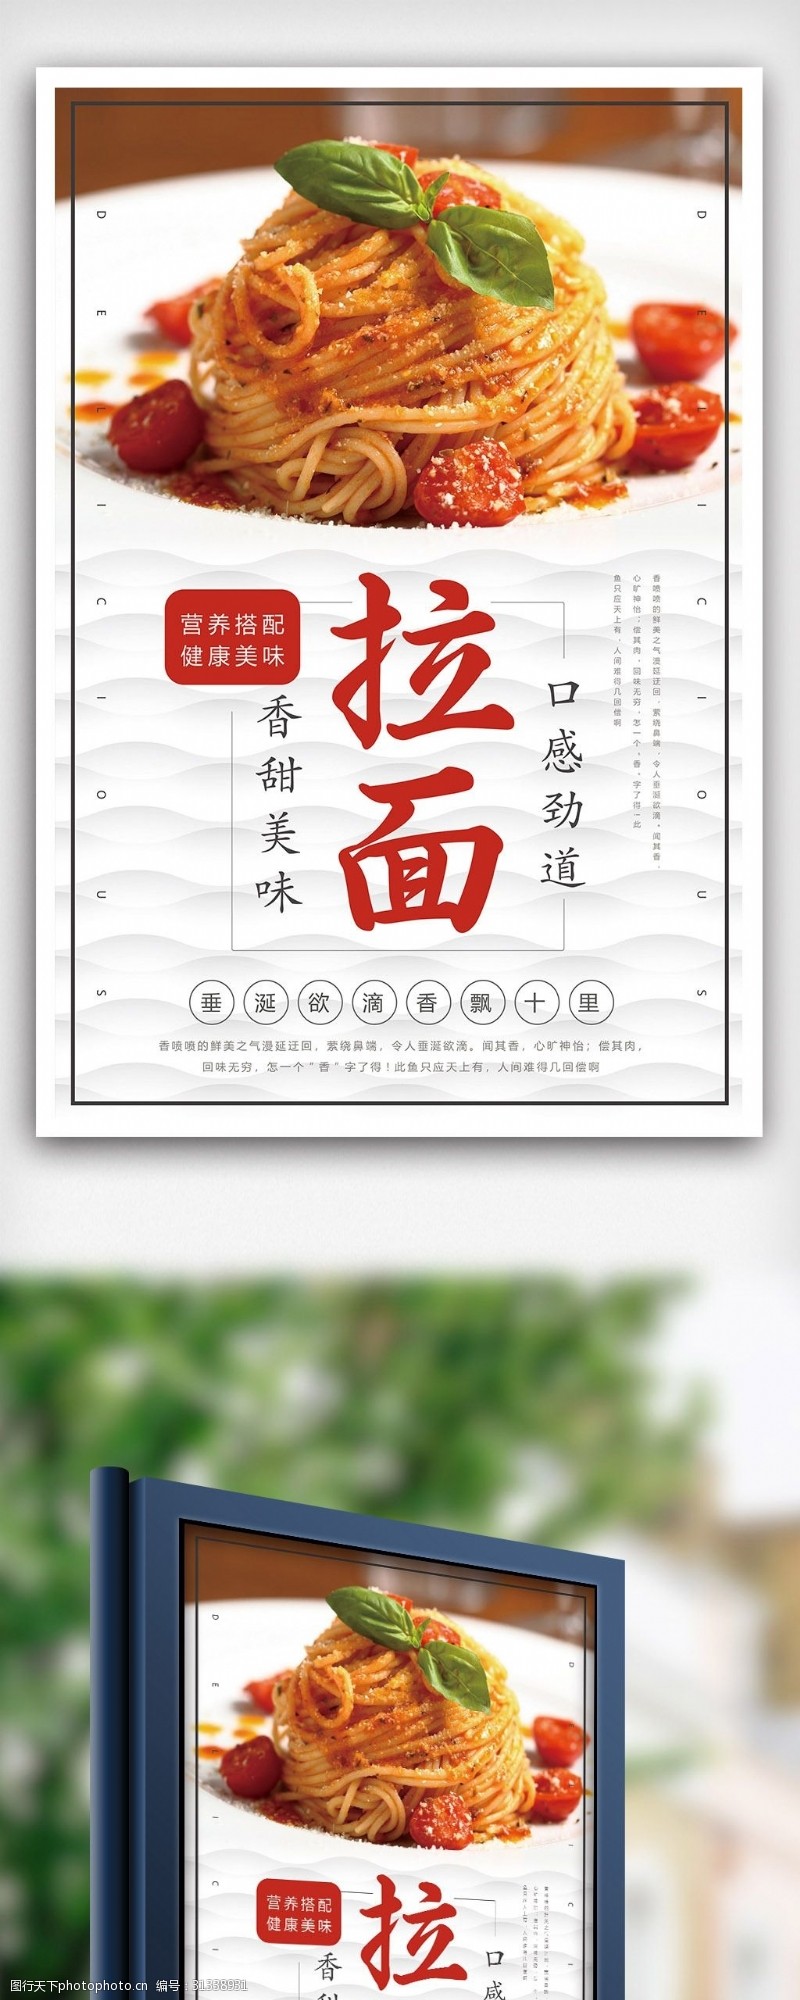 日本韩国料理西餐厅海鲜拉面食品宣传海报